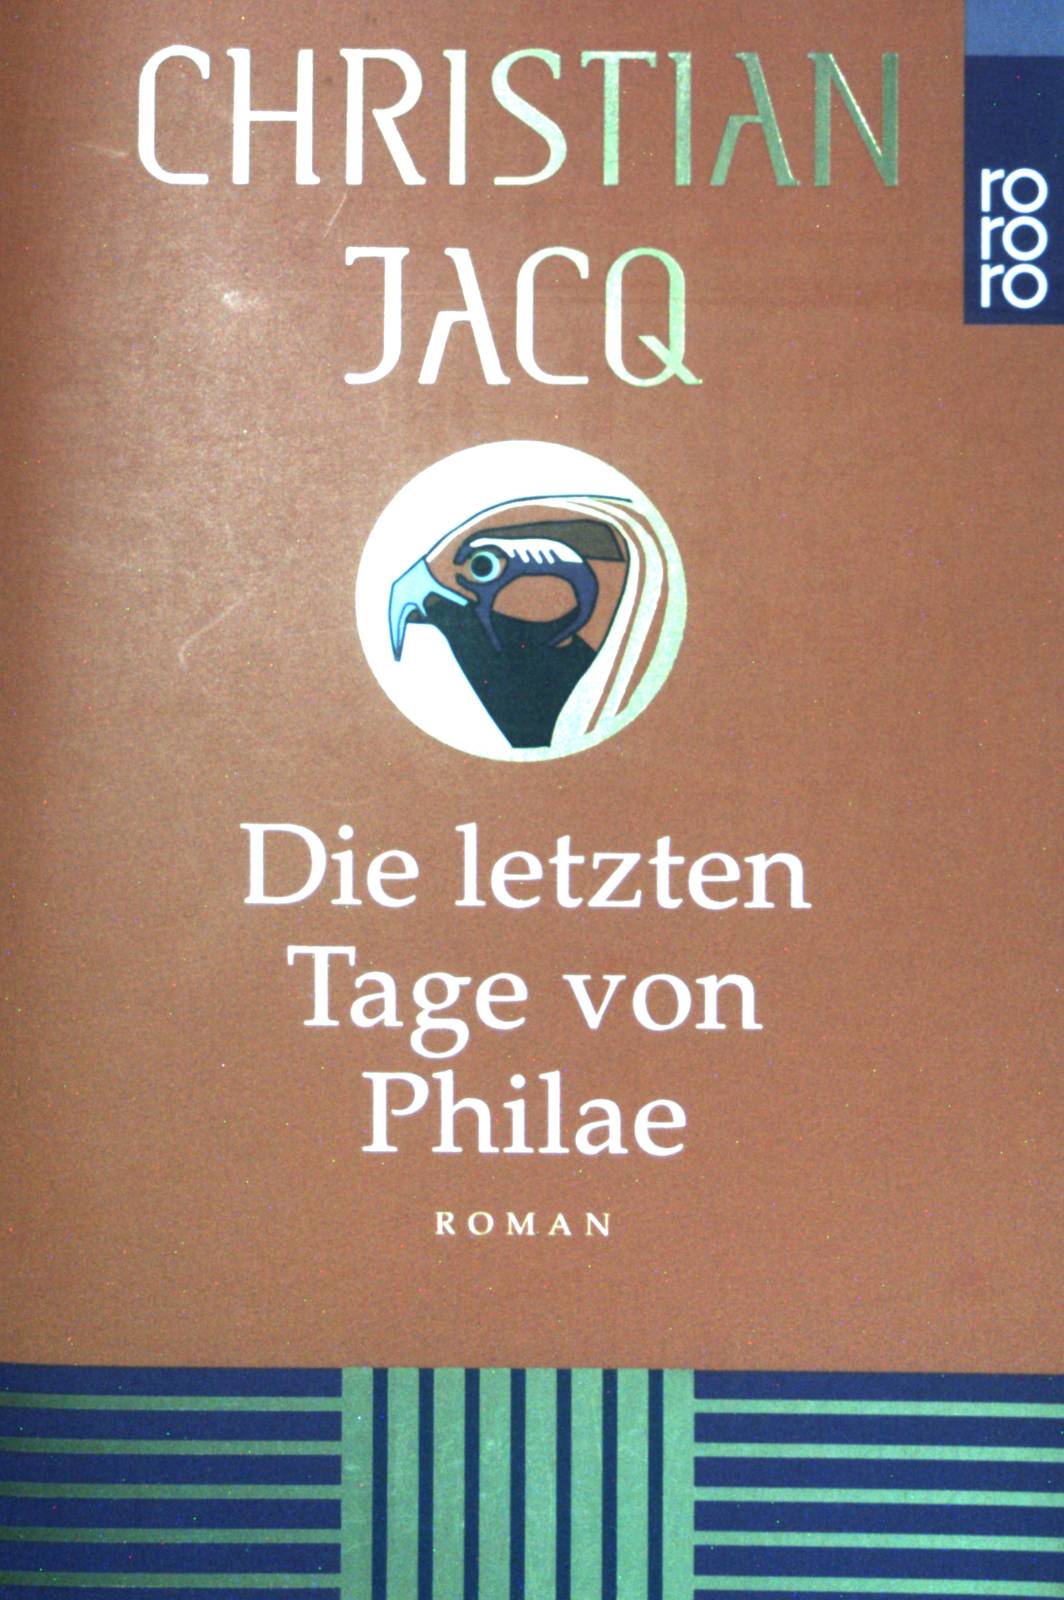 Die letzten Tage von Philae. (Nr 22569) - Jacq, Christian